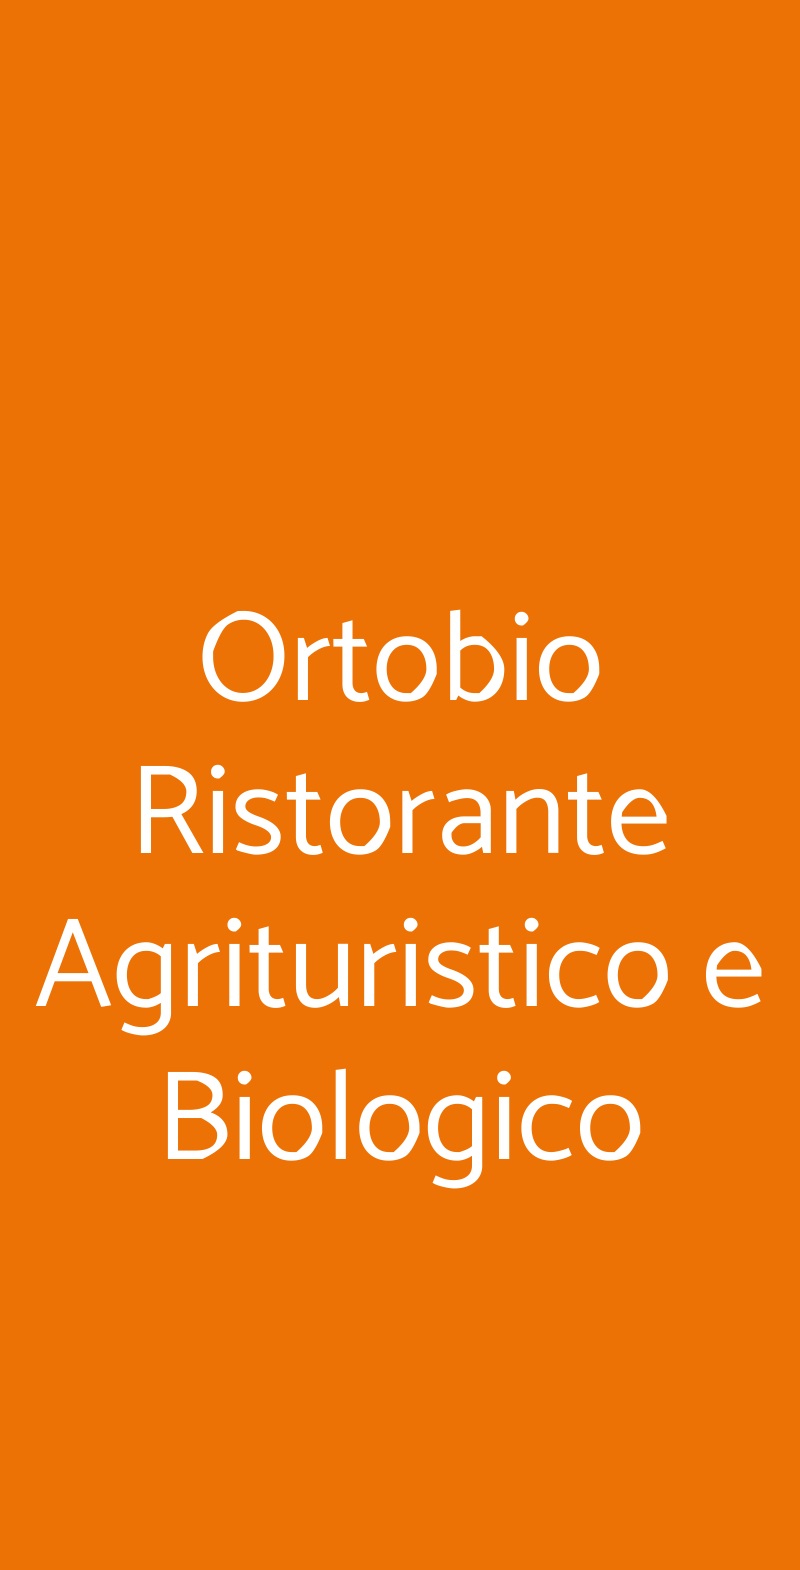 Ortobio Ristorante Agrituristico e Biologico Poggio Mirteto menù 1 pagina